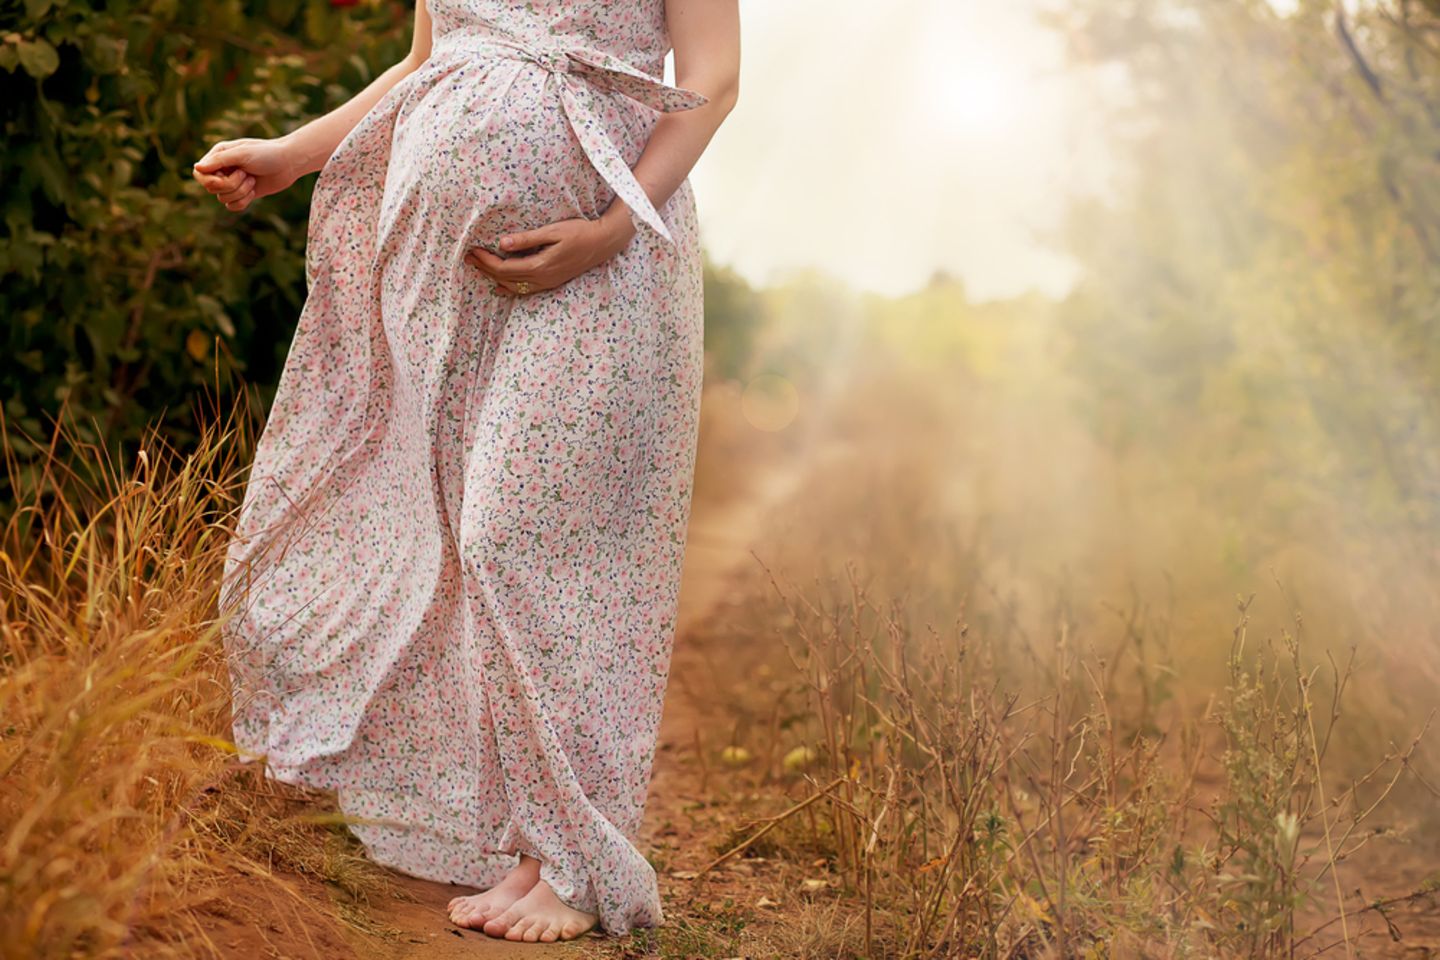 In der Schwangerschaft können auch Haare auf dem Bauch wachsen. Eine Schwangere geht draußen spazieren